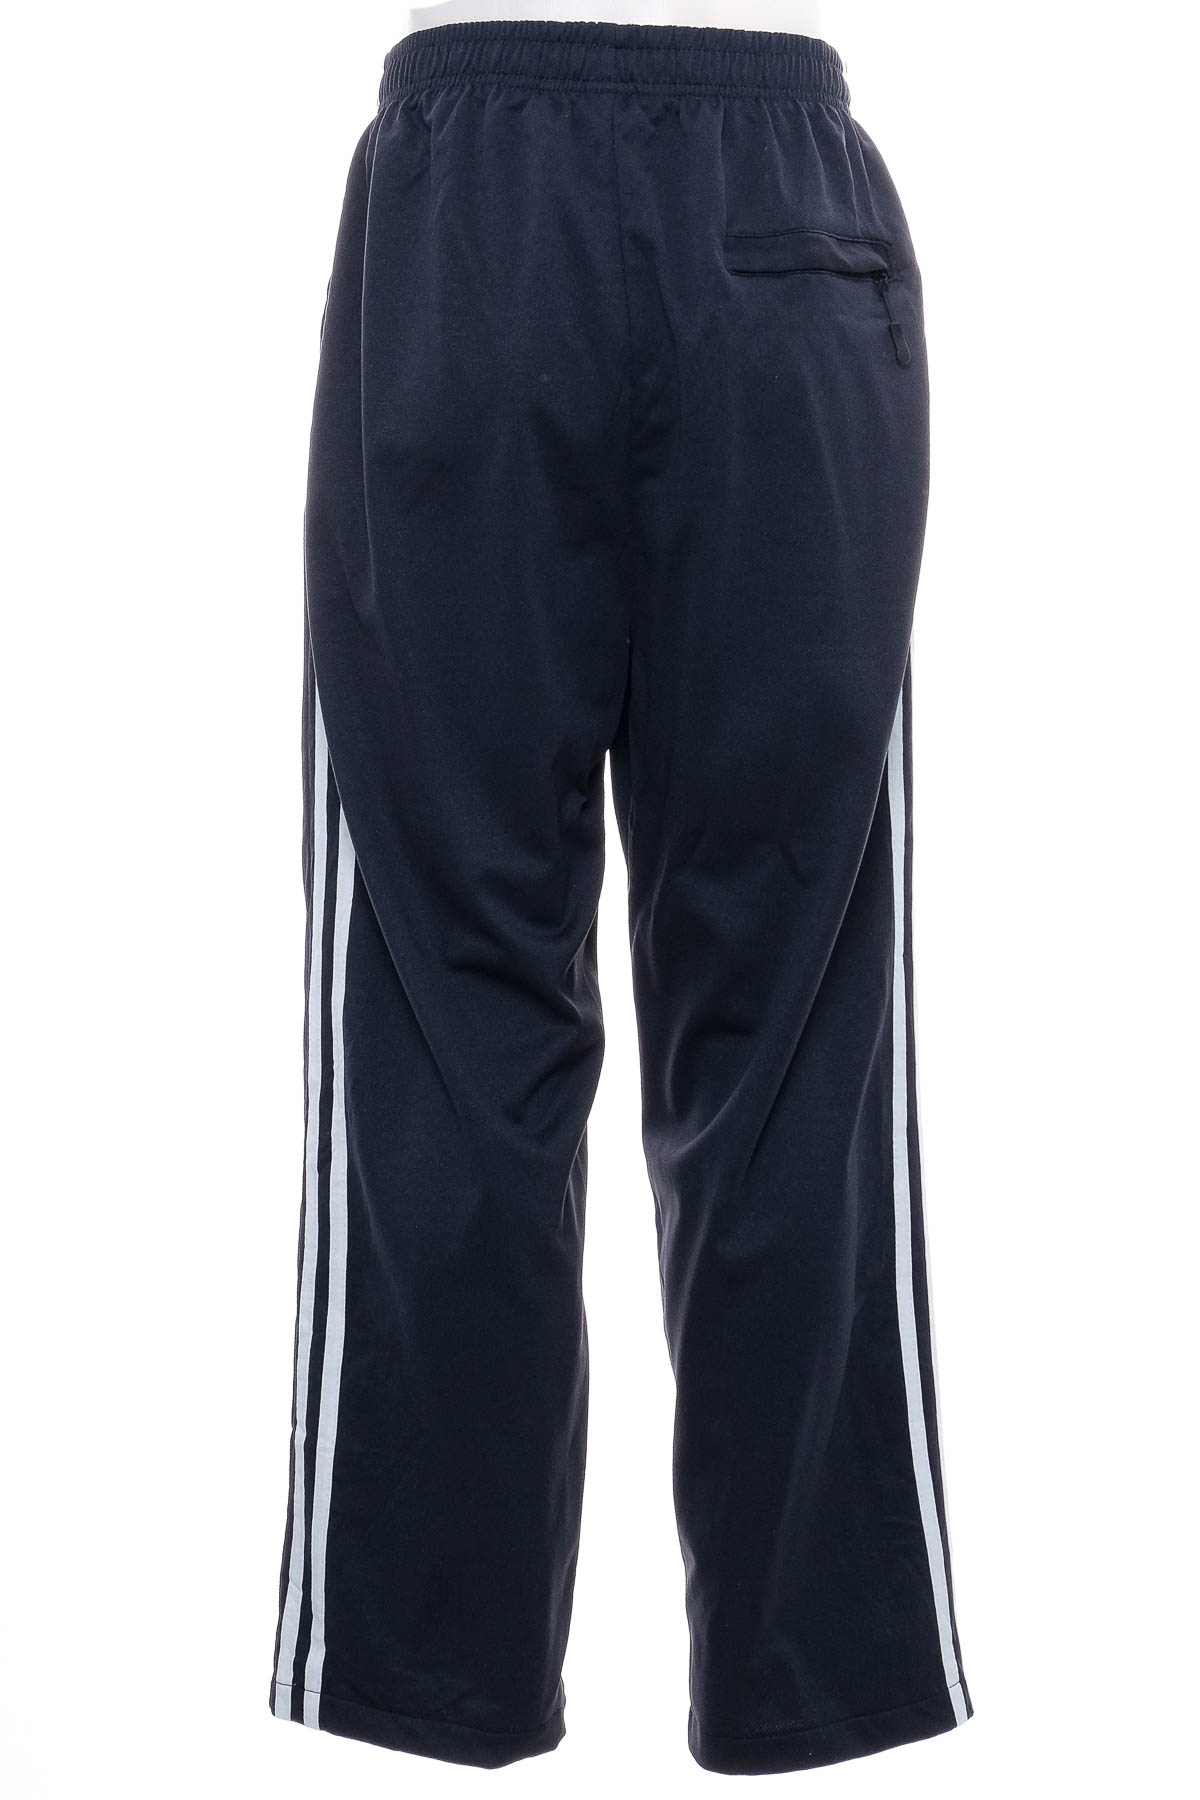 Αθλητικά παντελόνια ανδρών - TeX Basics - 1